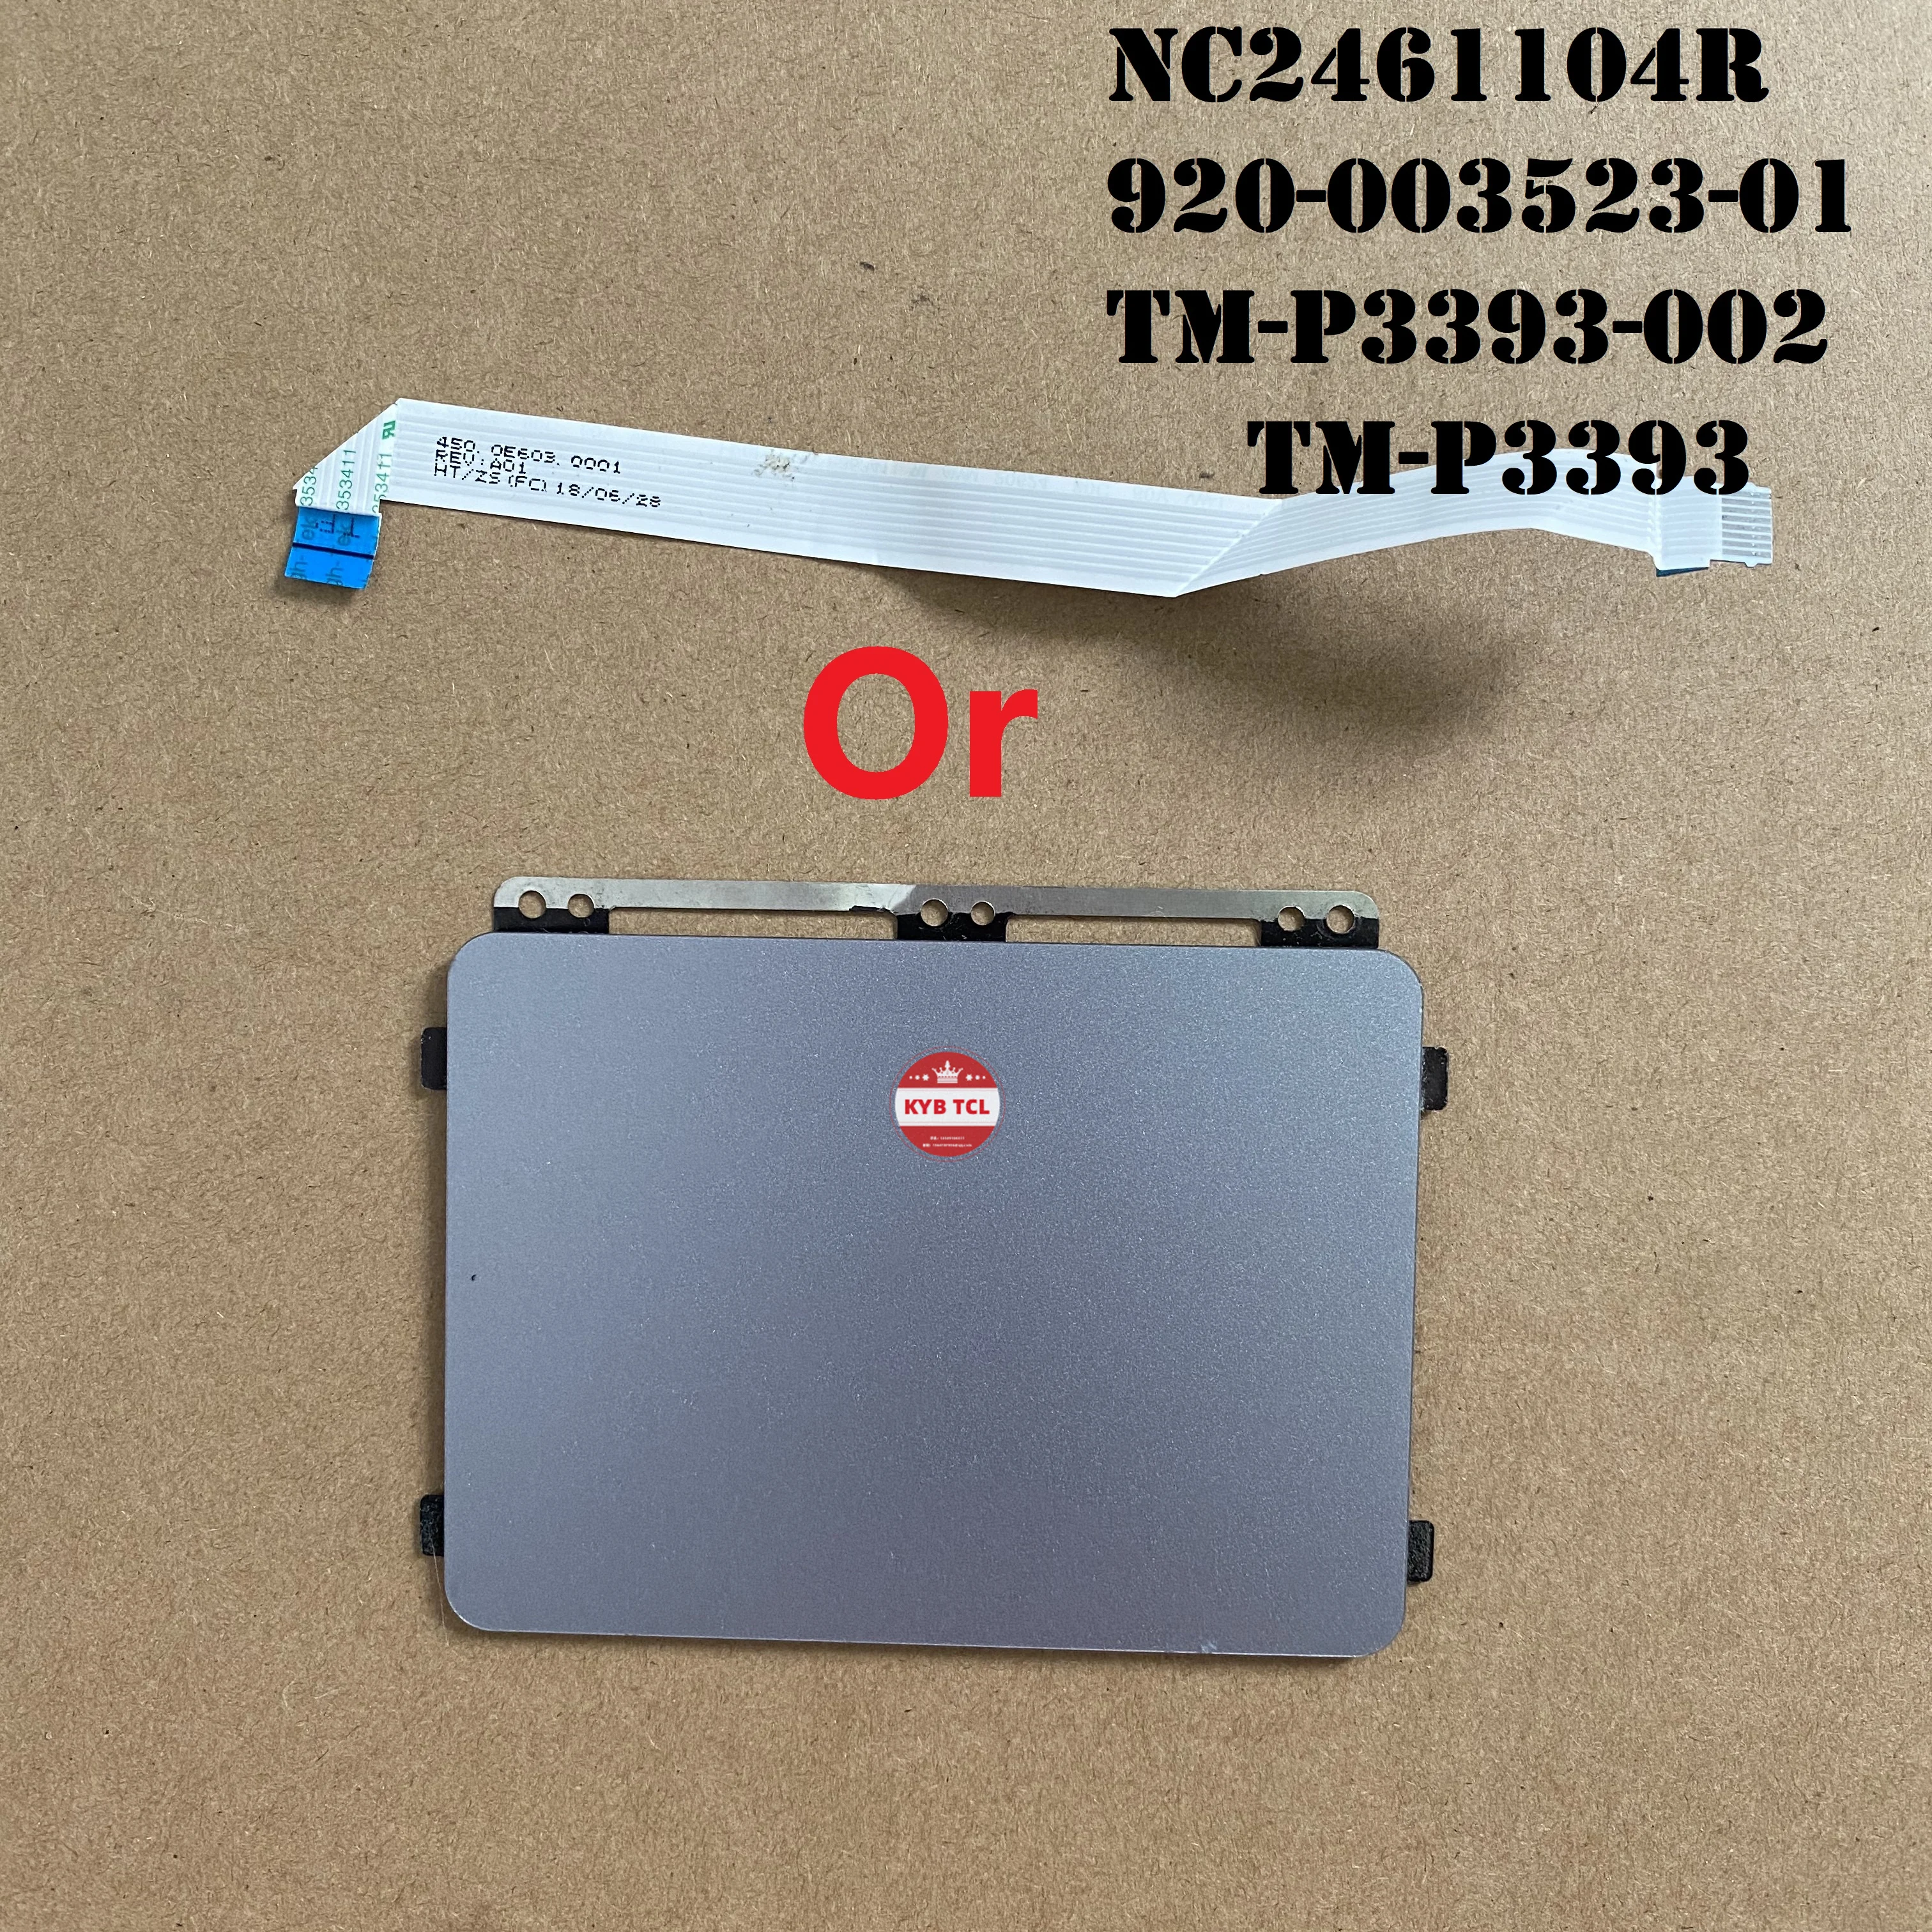 Плата для сенсорной панели ноутбука, кнопки мыши или кабель 450.0E603.0001 NC2461104R 920-003523-01 TM-P3393-002 TM-P3393